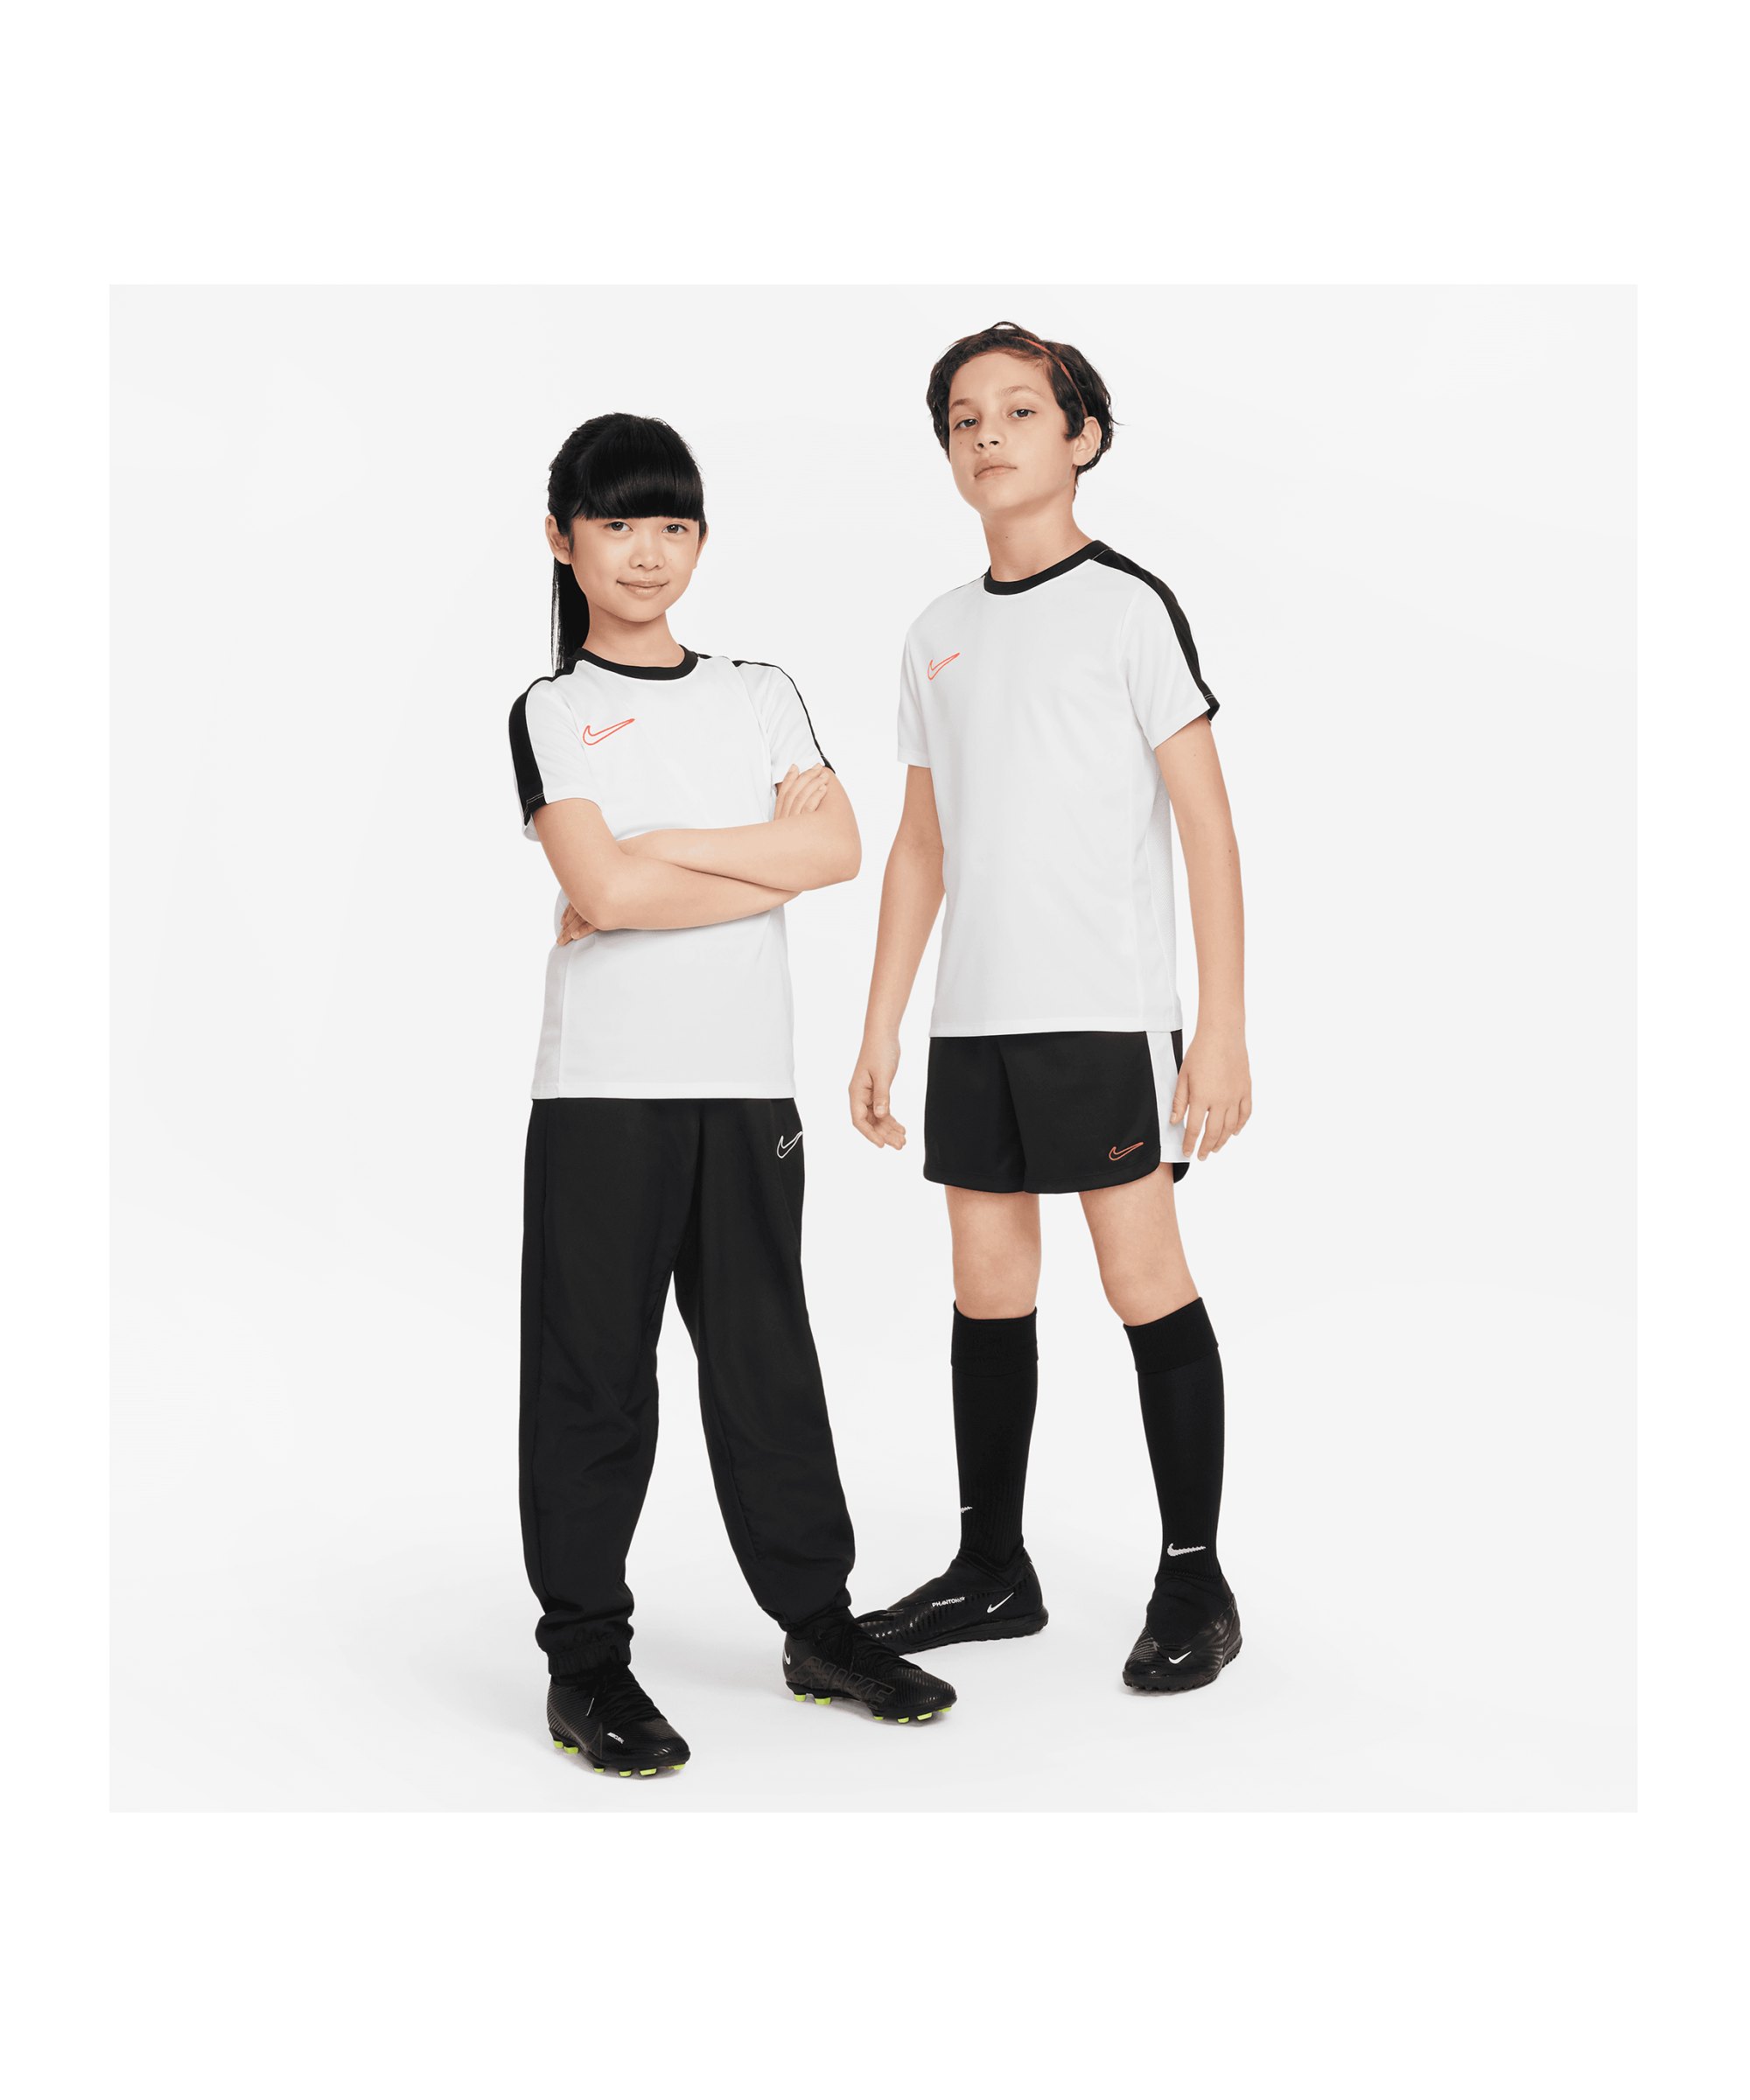 Academy Schwarz | Fussball F101 T-Shirt Weiss Nike Rot Kids 23